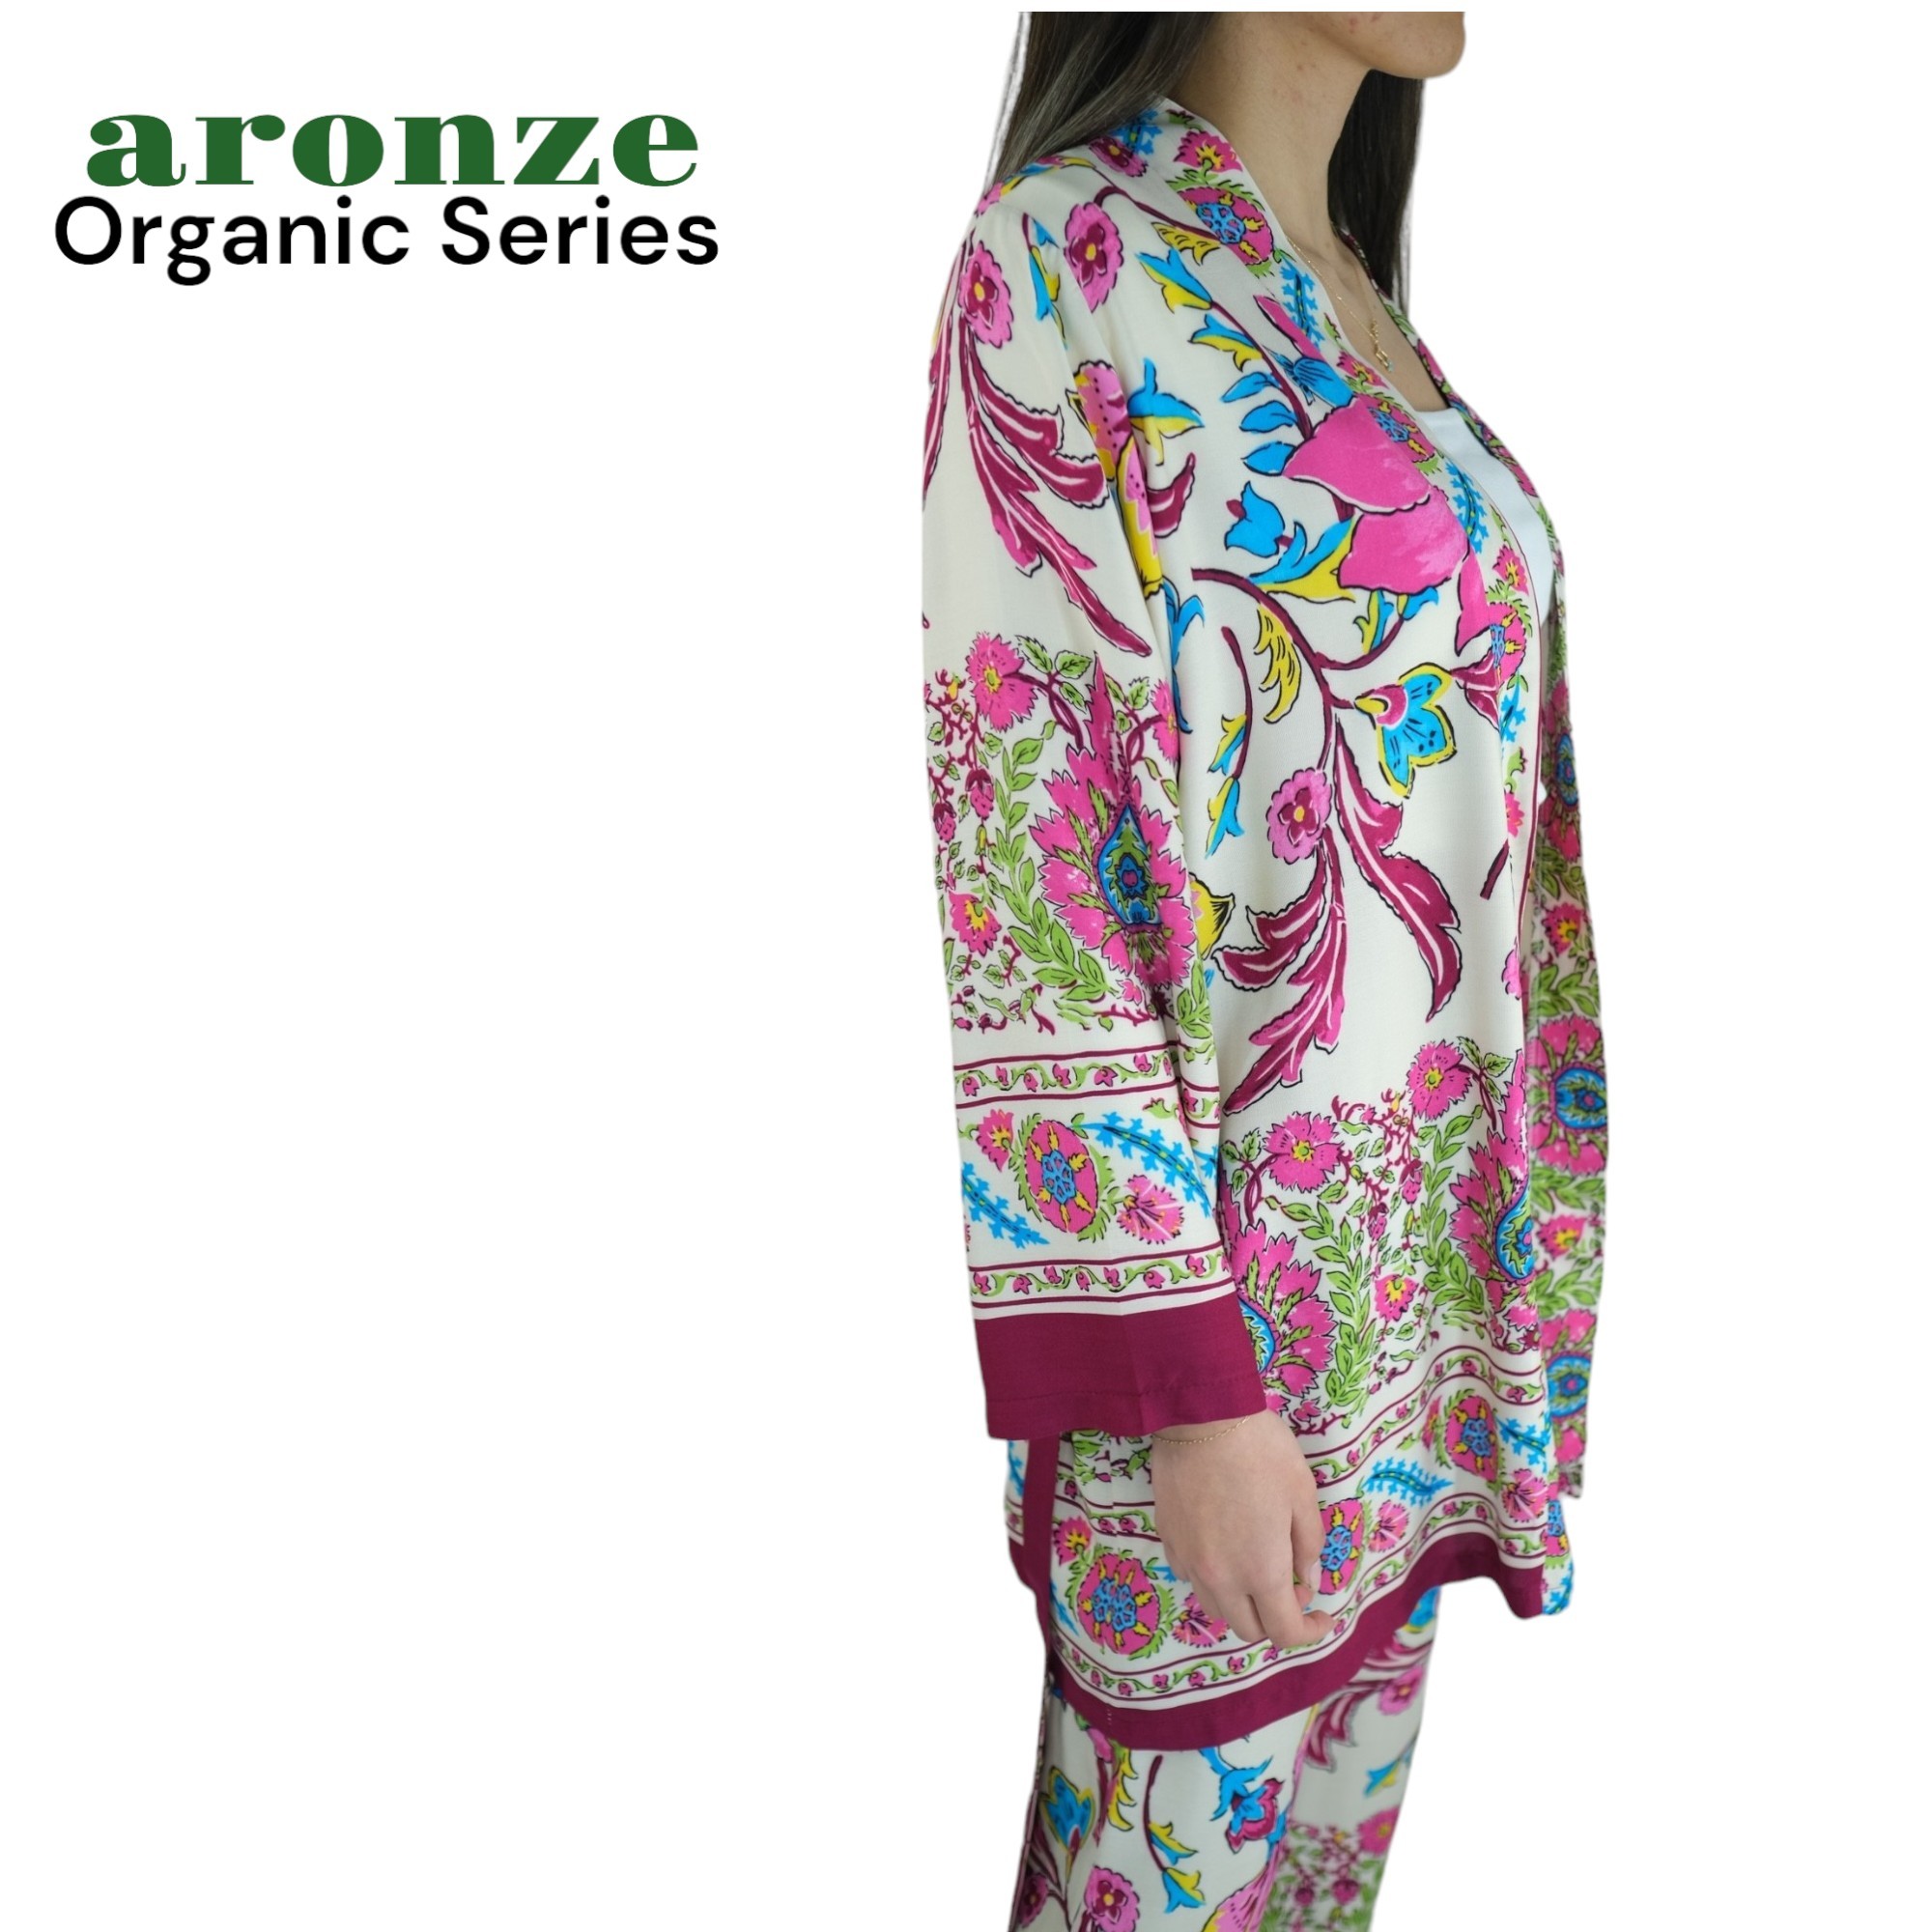 Aronze Organic Series %100 Türk Pamuğu Viskon Kimono  - ÇİÇEK DESEN 3